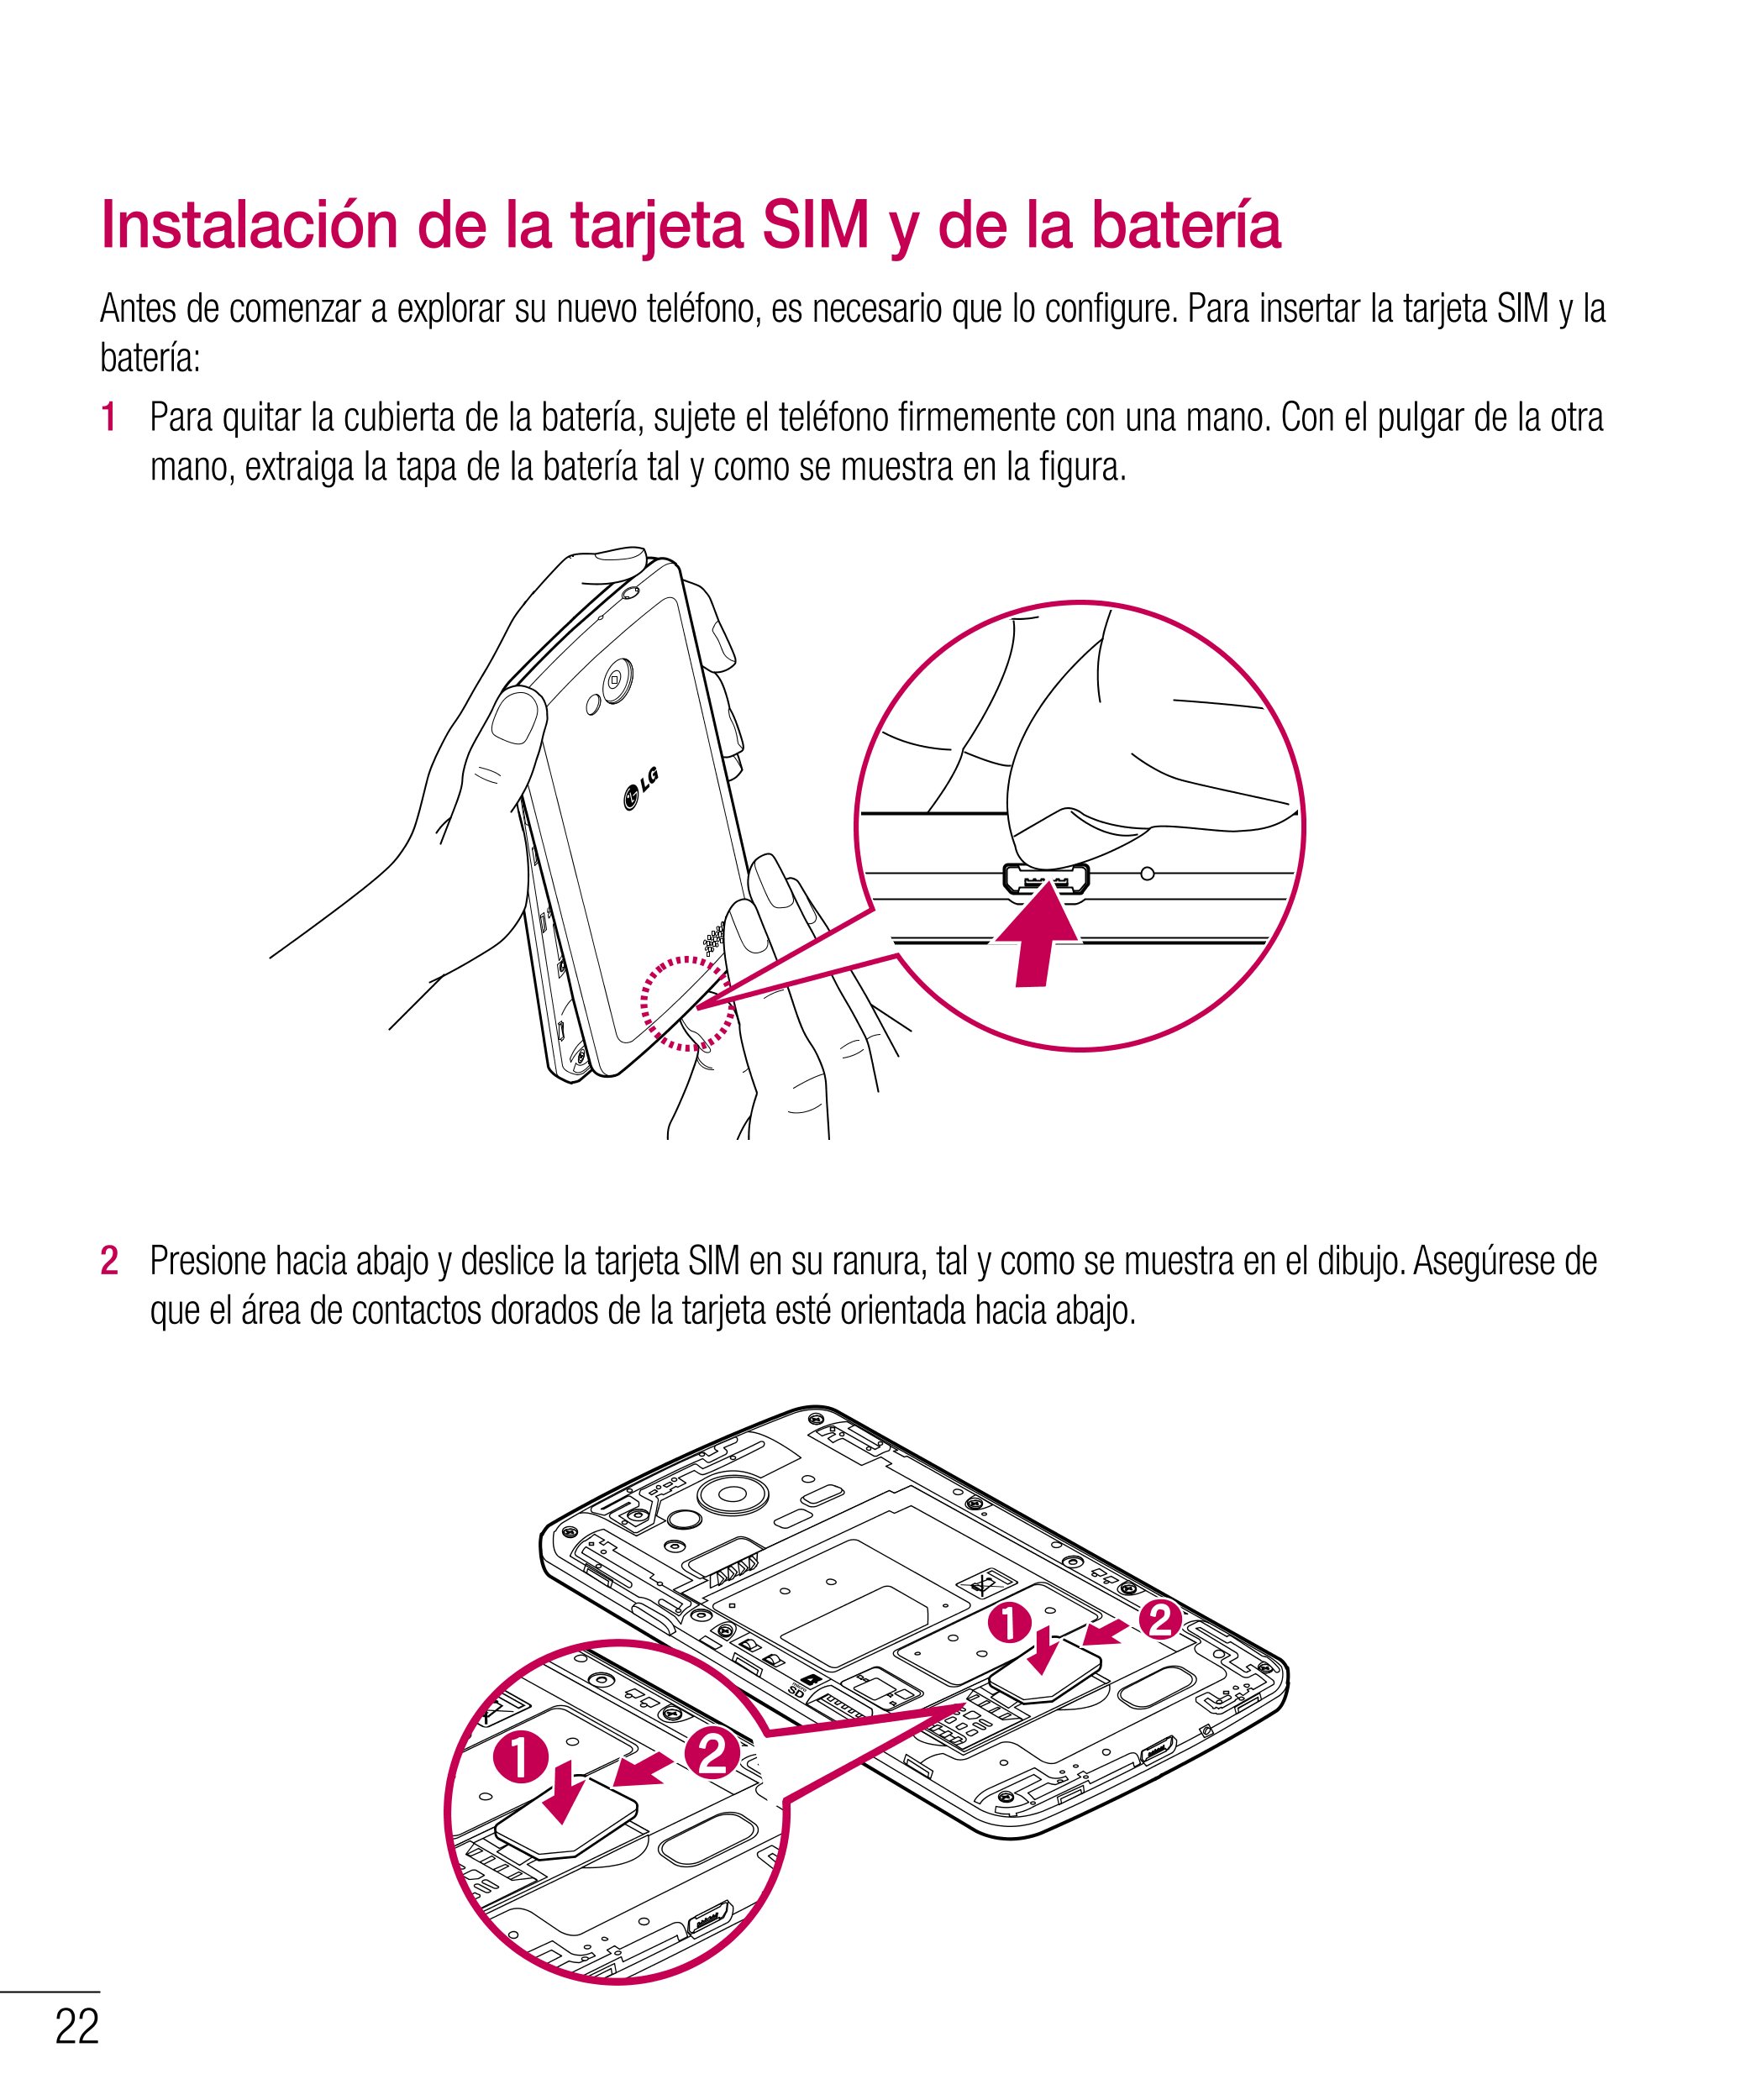 Instalación de la tarjeta SIM y de la batería
Antes de comenzar a explorar su nuevo teléfono, es necesario que lo configure. Par